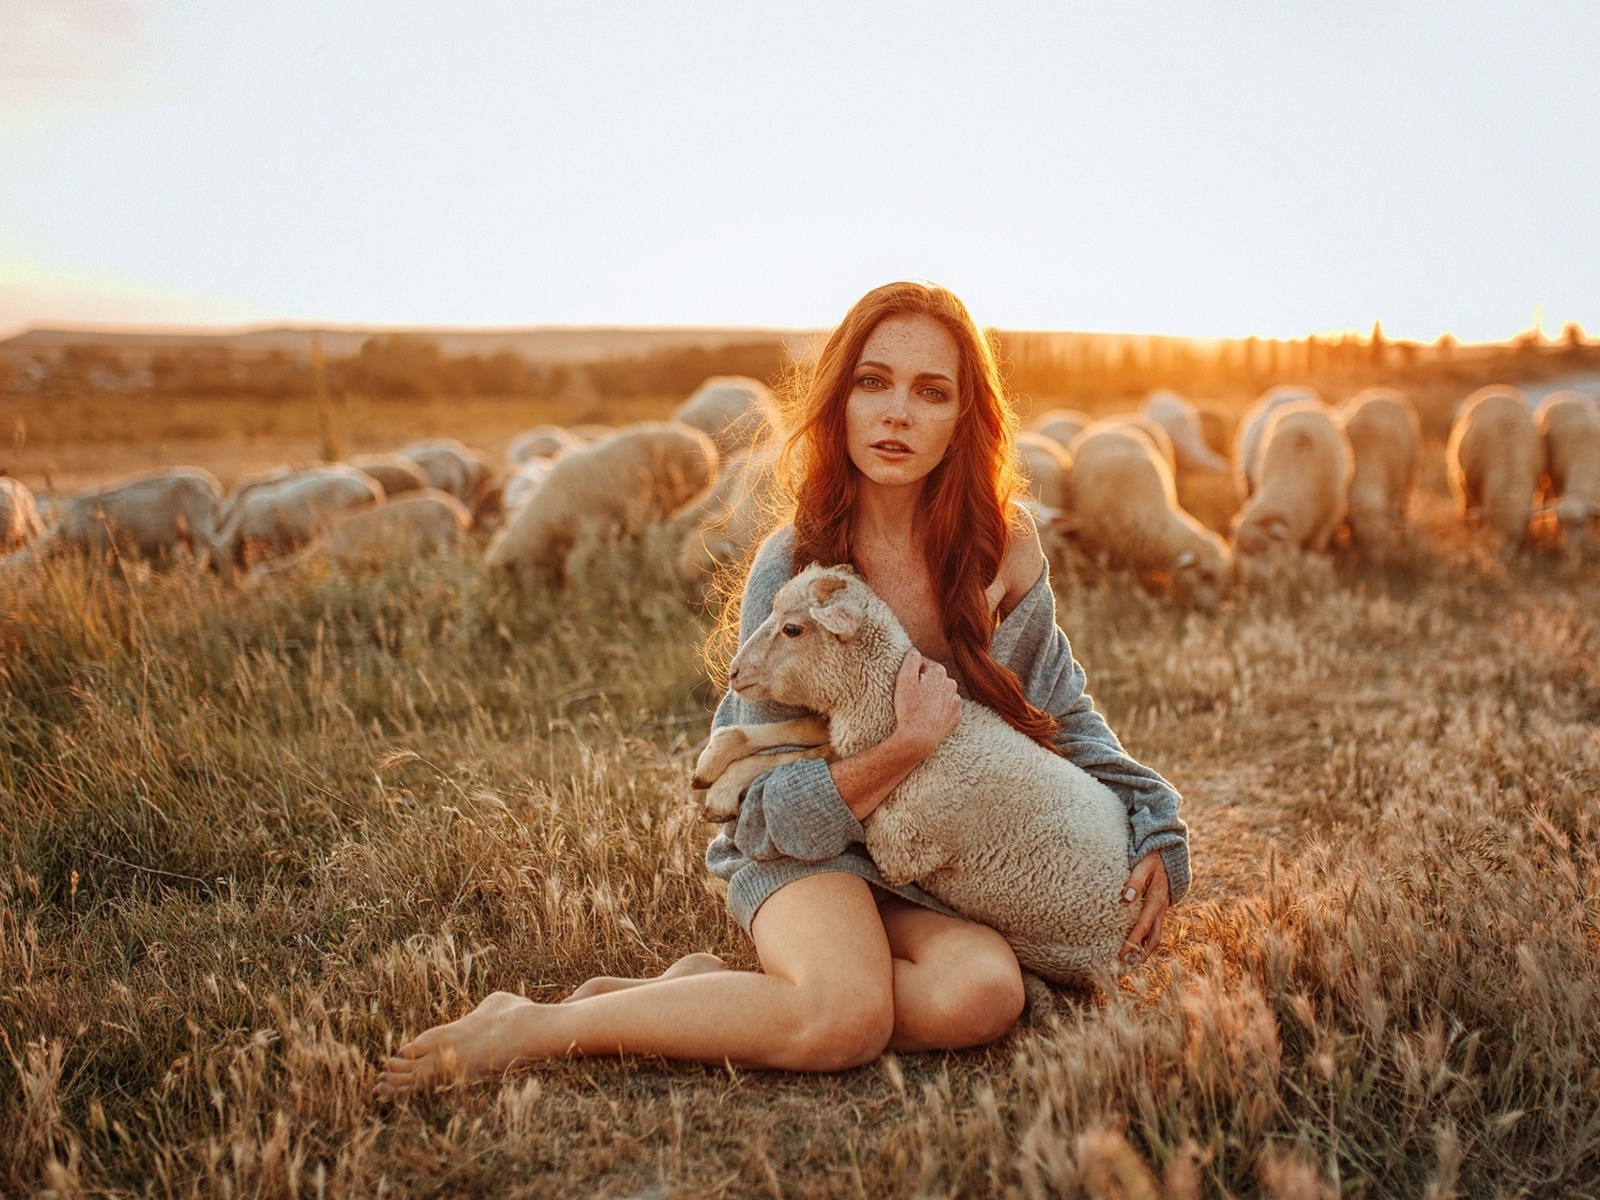 Обои Girl with Sheep 1600x1200